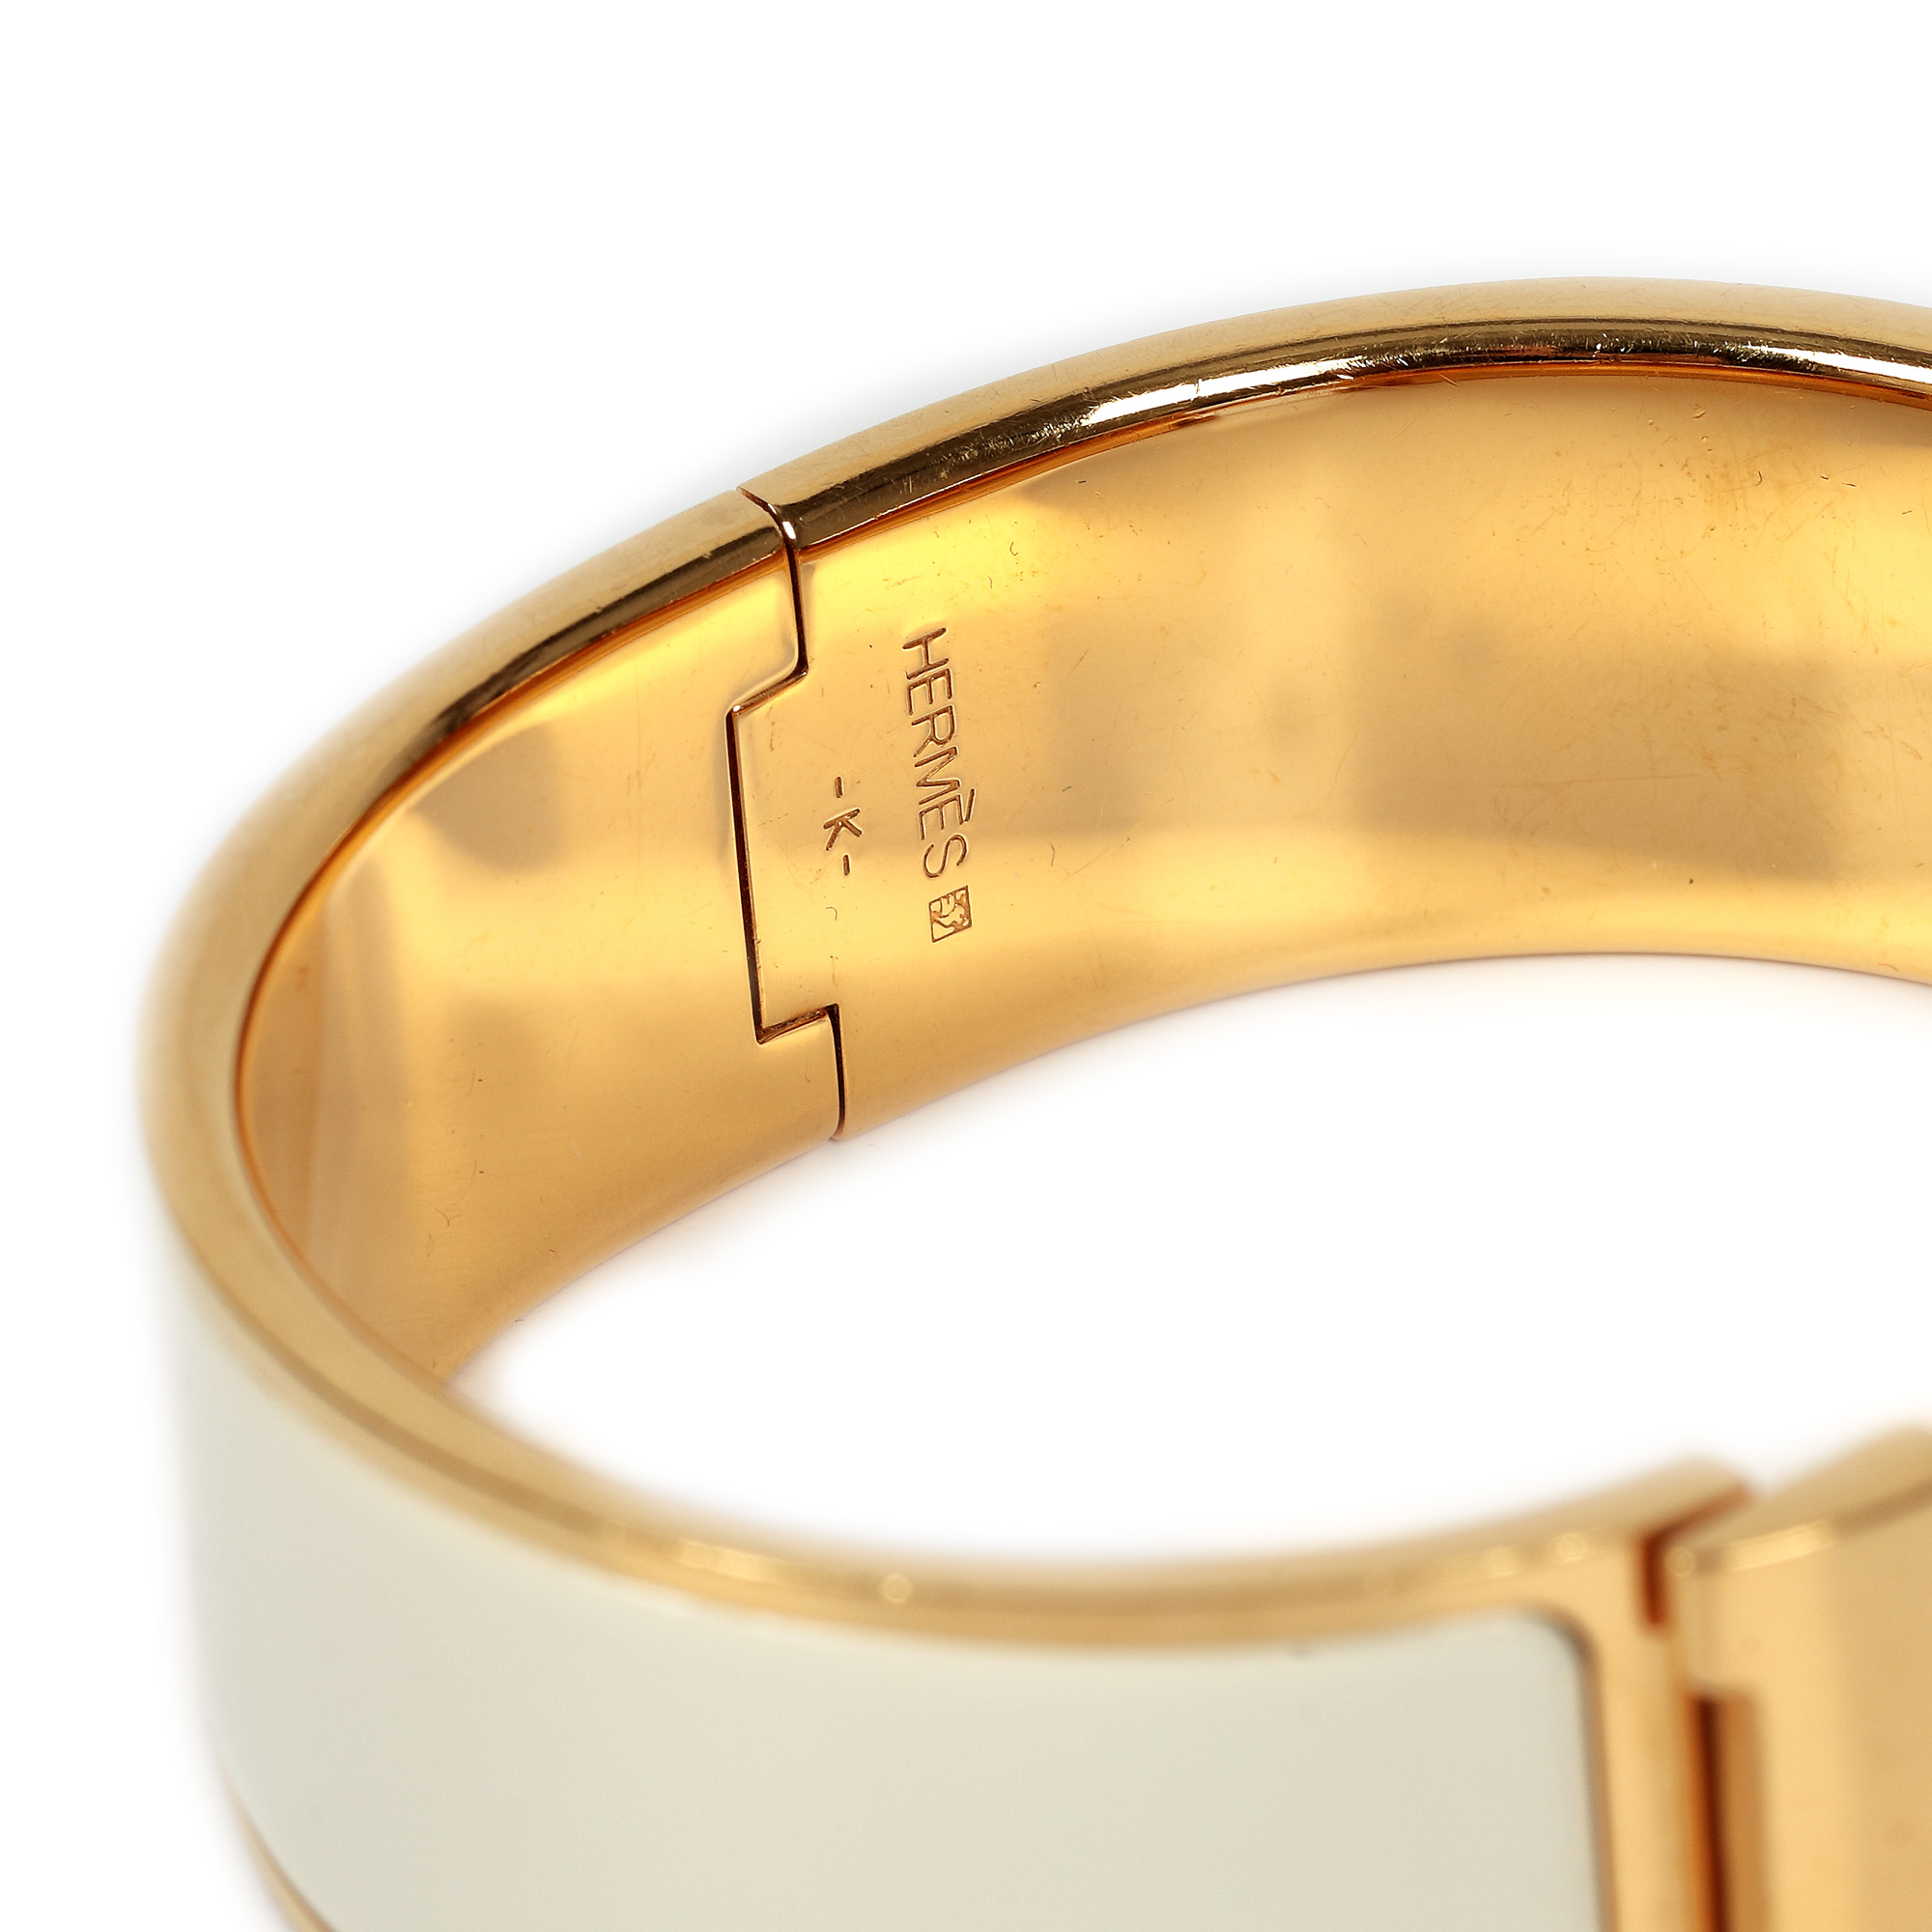 Hermès, Clic Clac bracelet, white enamel - Image 4 of 4